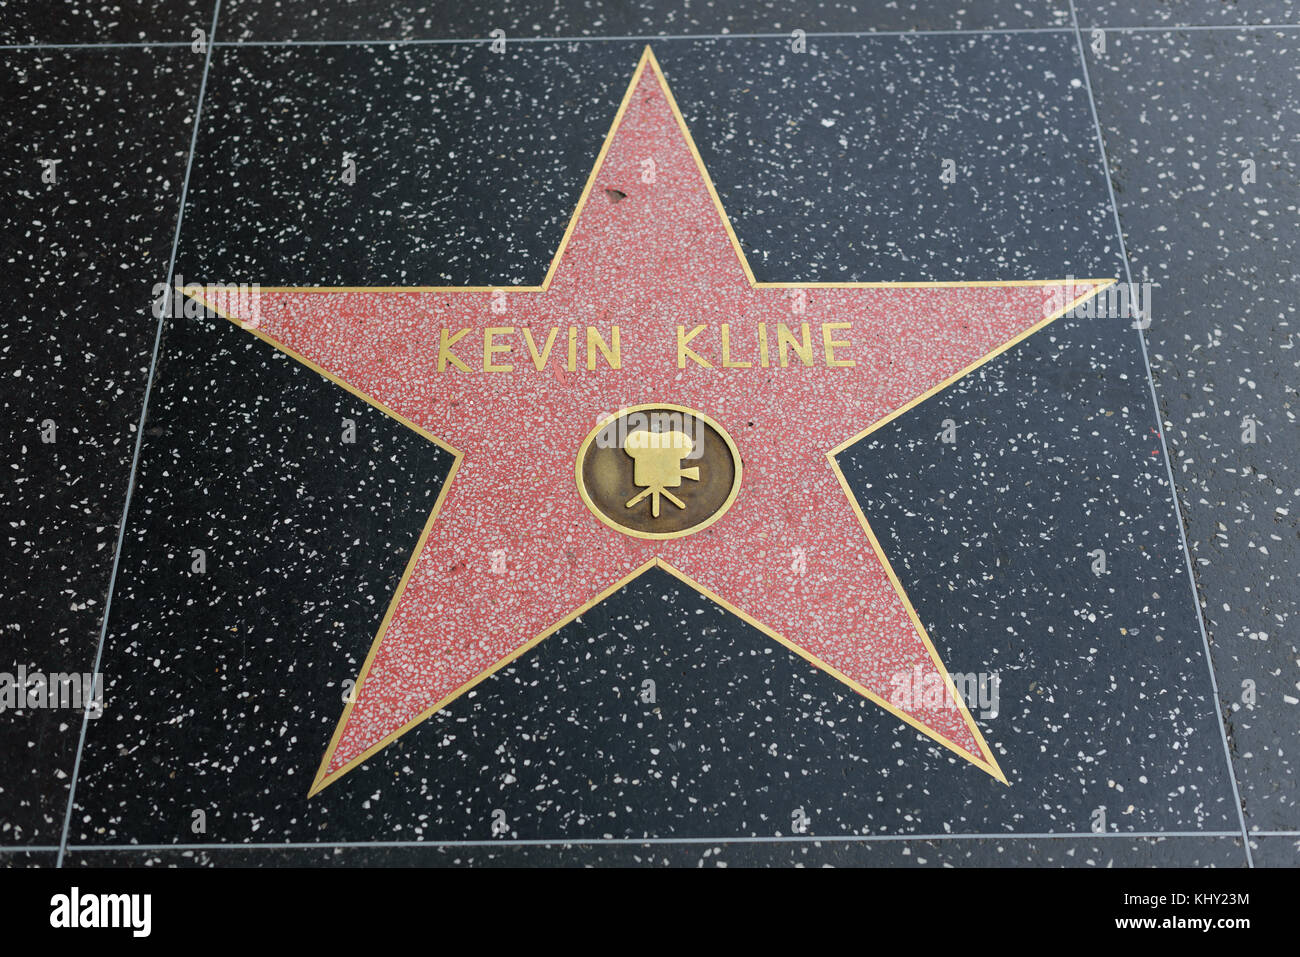 HOLLYWOOD, CA - DÉCEMBRE 06 : Kevin Kline star sur le Hollywood Walk of Fame à Hollywood, Californie, le 6 décembre 2016. Banque D'Images